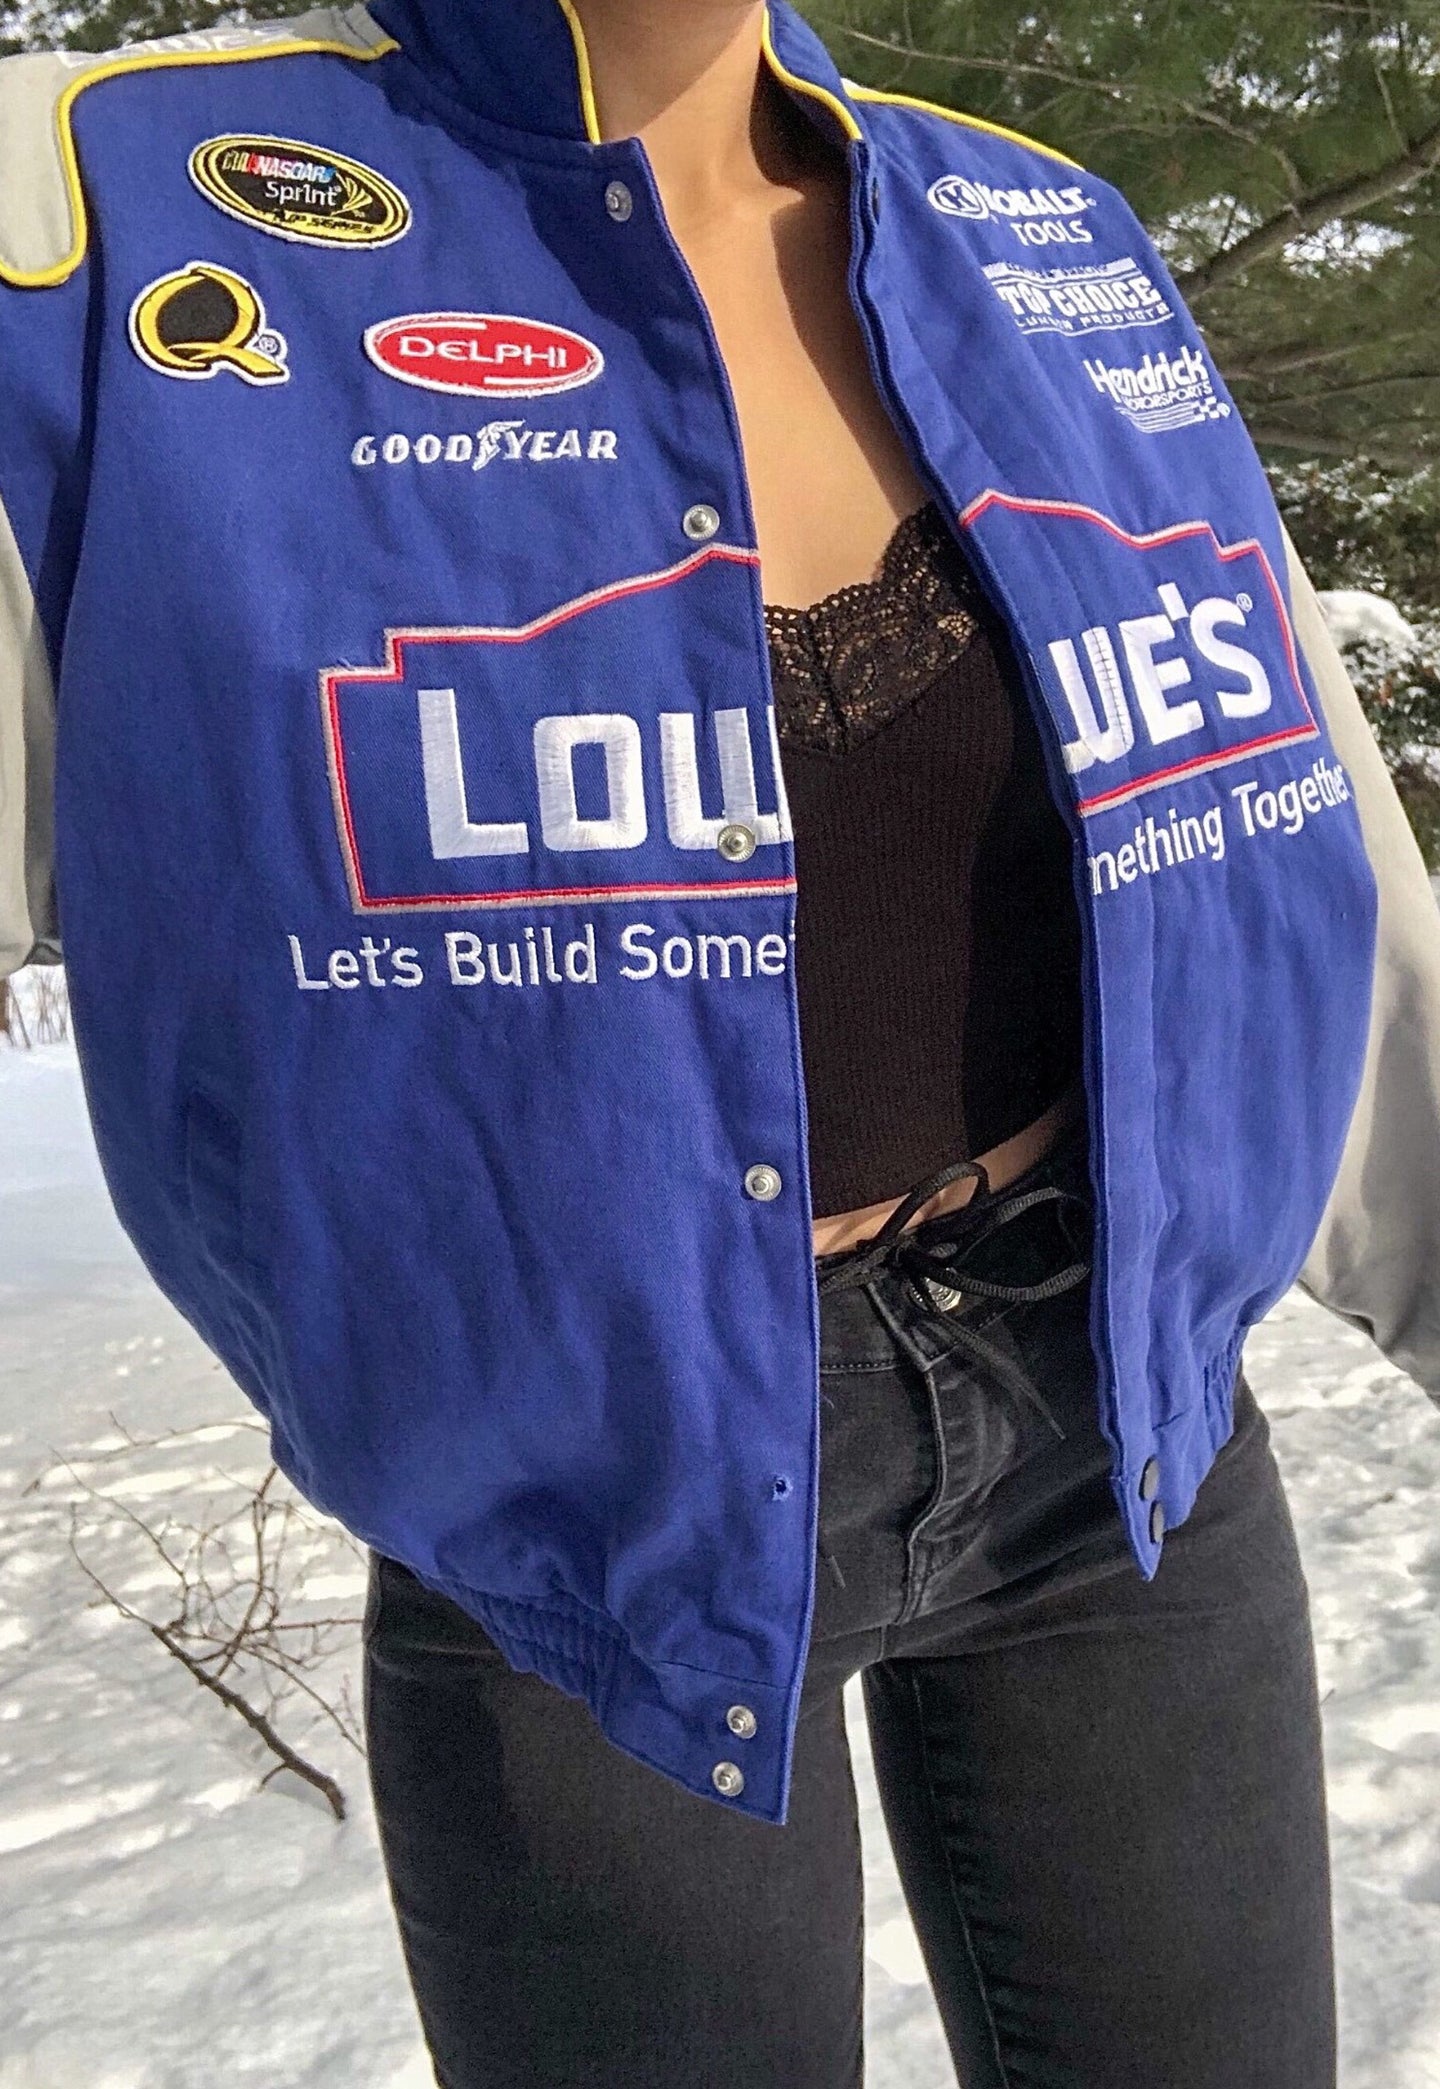 Lowe’s Nascar Jacket